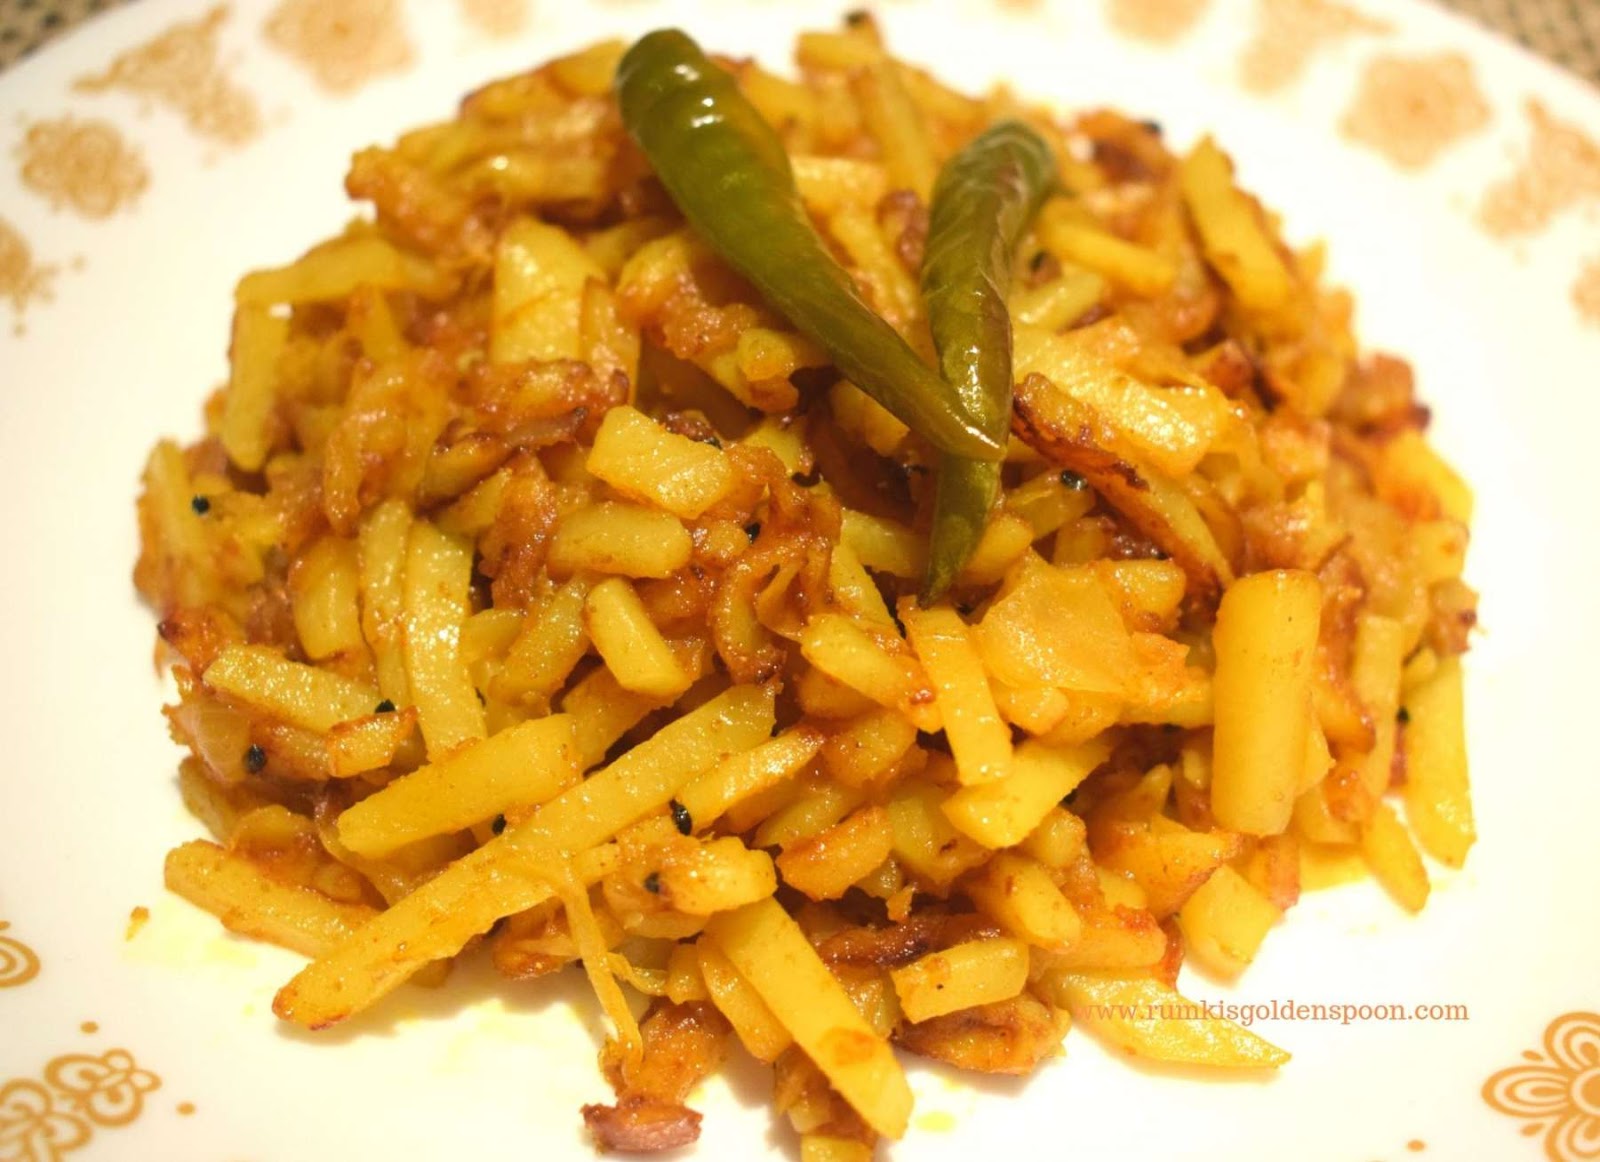 Indian Recipe, Bihari Cuisine, Vegetarian recipe, vegan recipe, Quick and Easy, Bihari style Aloo Bhaji | Spicy Potato Fry, Rumki's Golden Spoon, Spicy potato dry curry, Indian recipe with potatoes, aloo bhaja, sukhi aloo ki sabzi/sabji